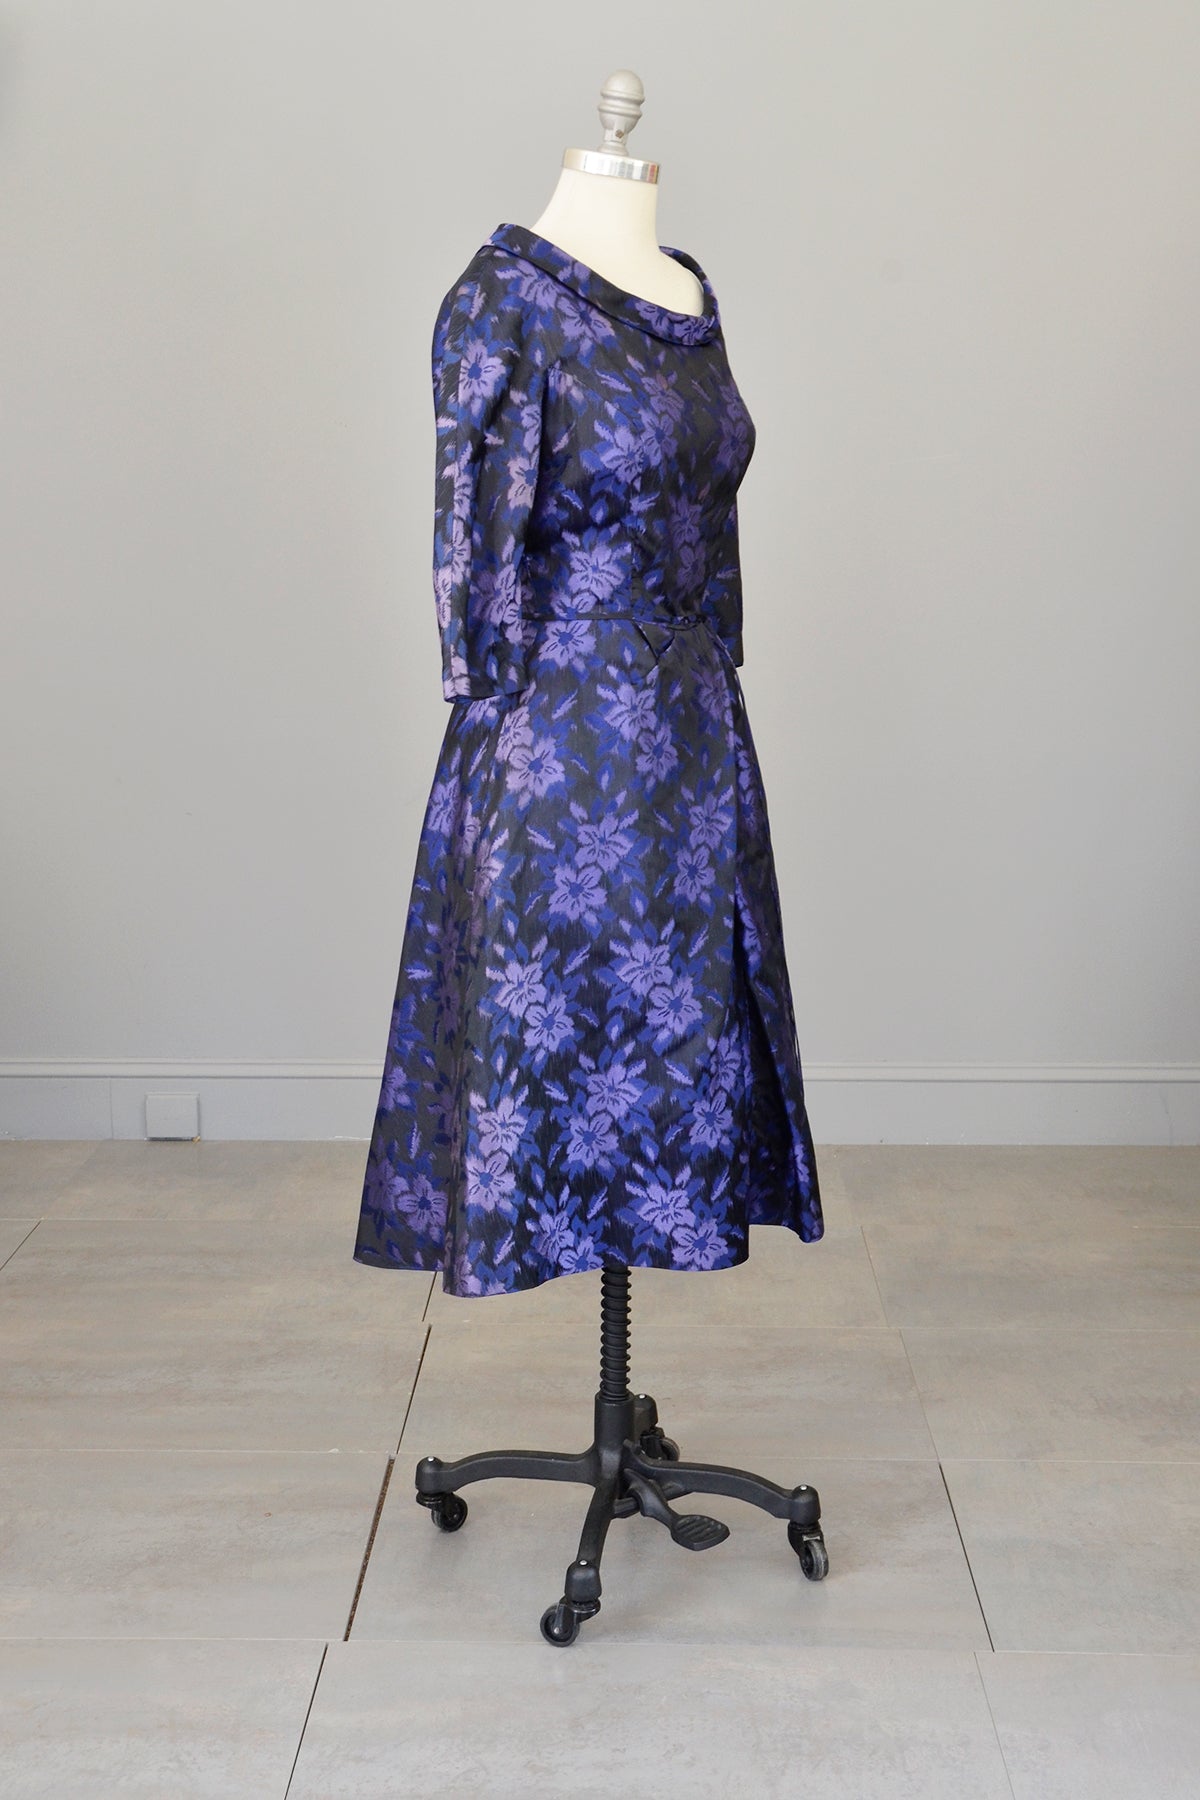 1950s 60s Black Purple Floral Print Office Party Dress